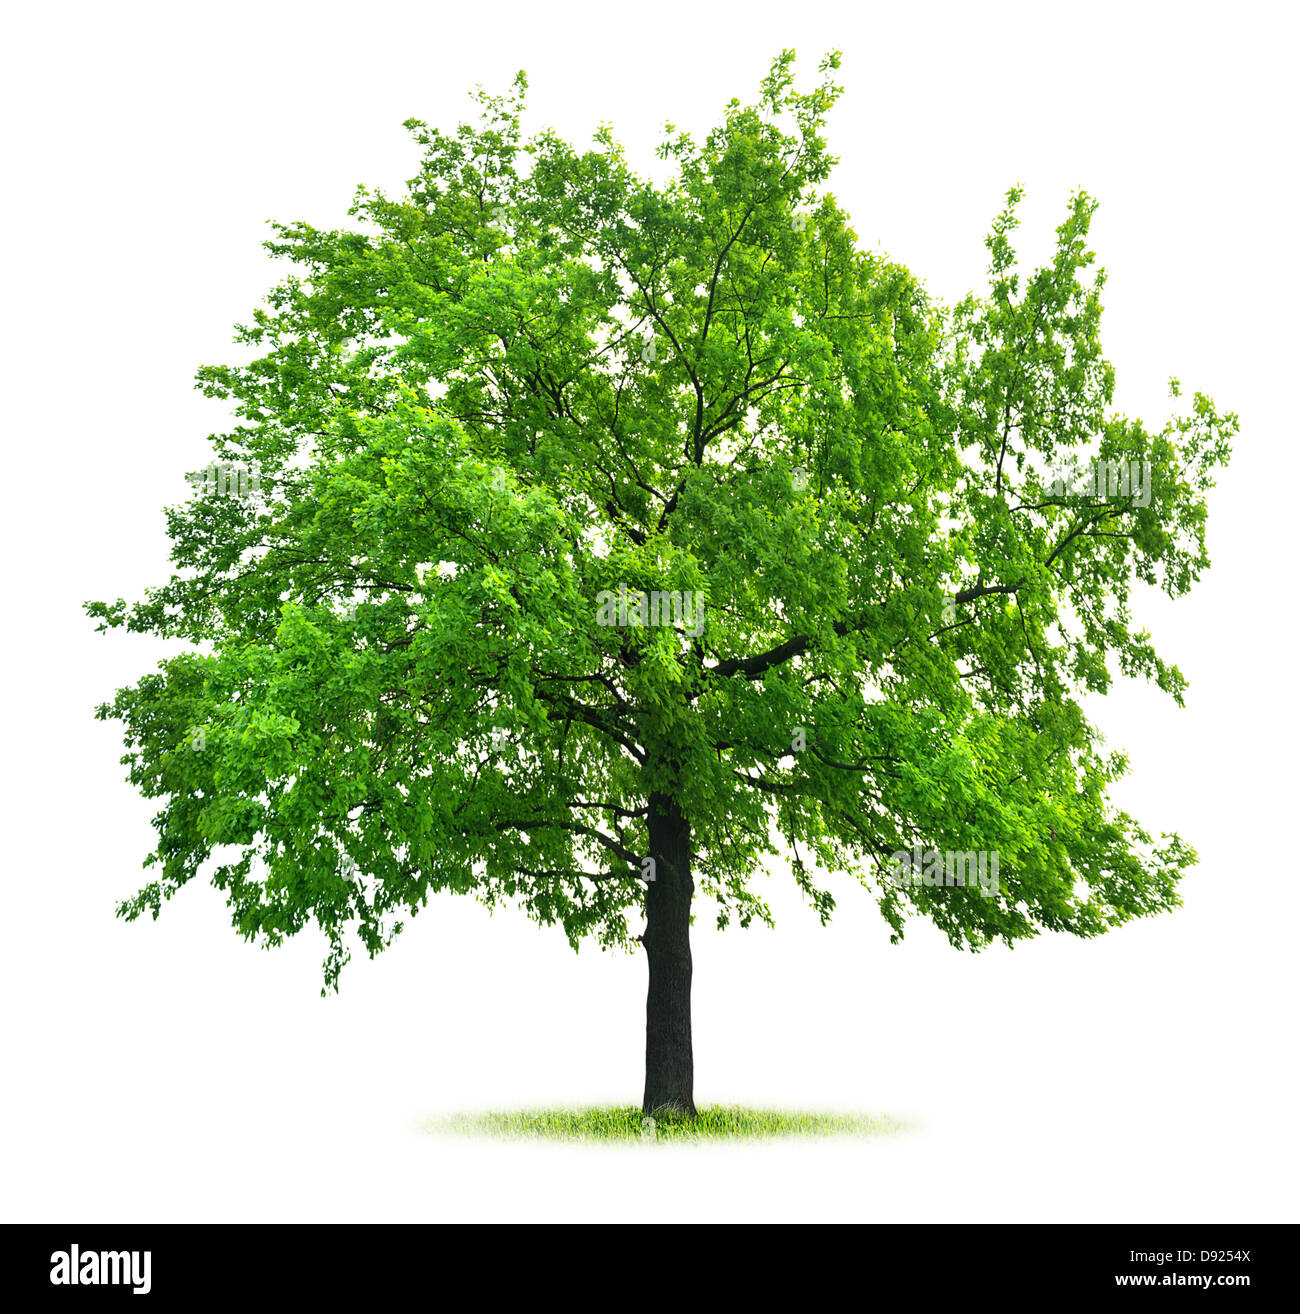 Big green oak isolated on white background Stock Photo